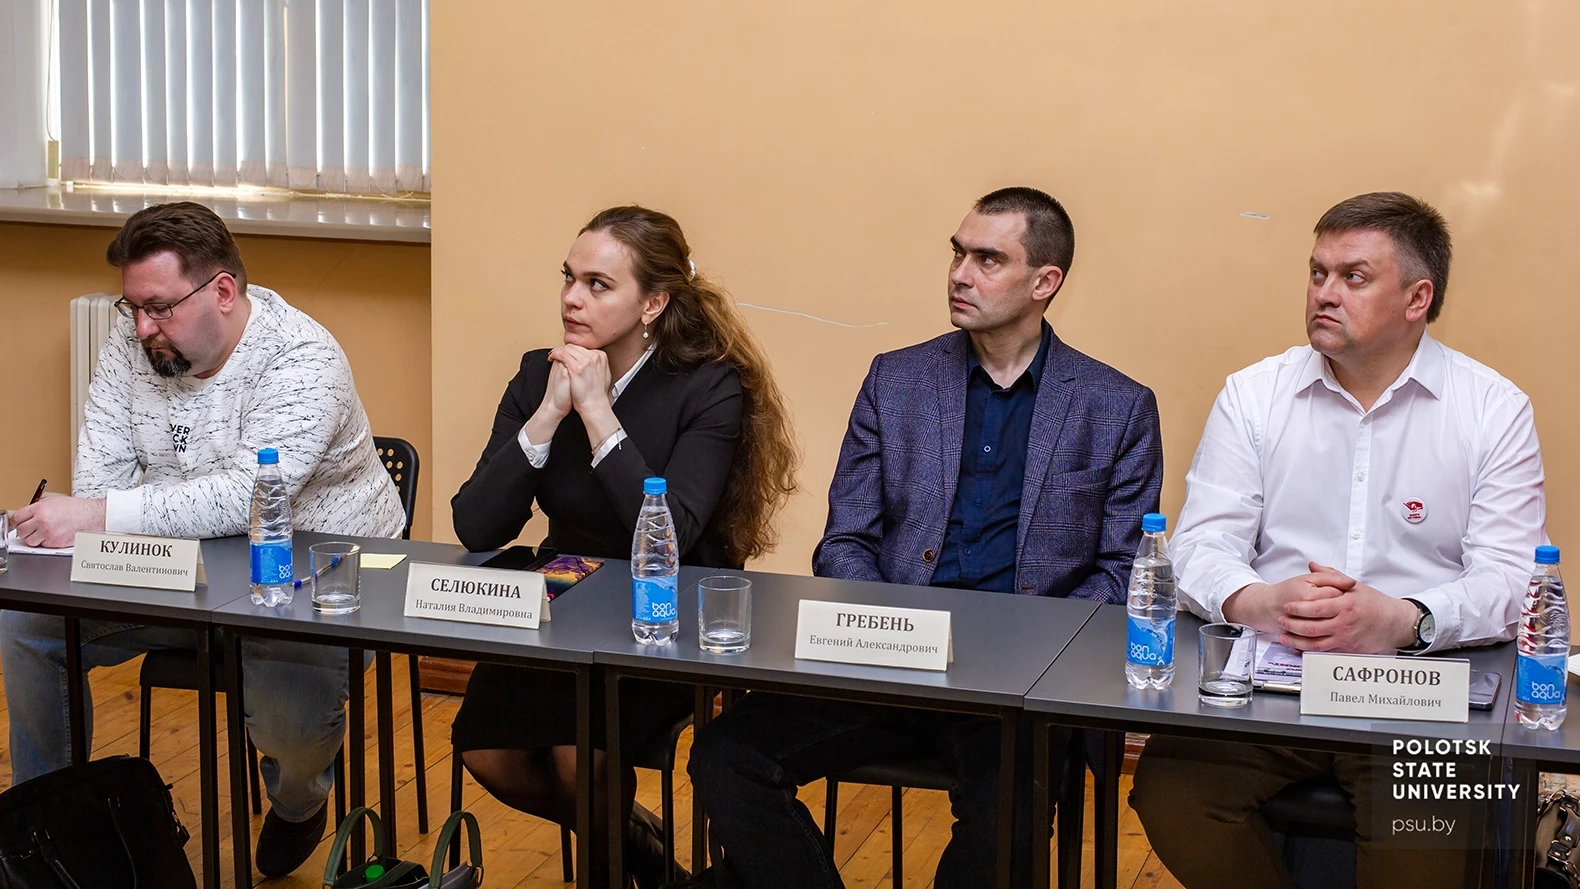 Участники дискуссионной панели международного круглого стола "Забвению не подлежит"